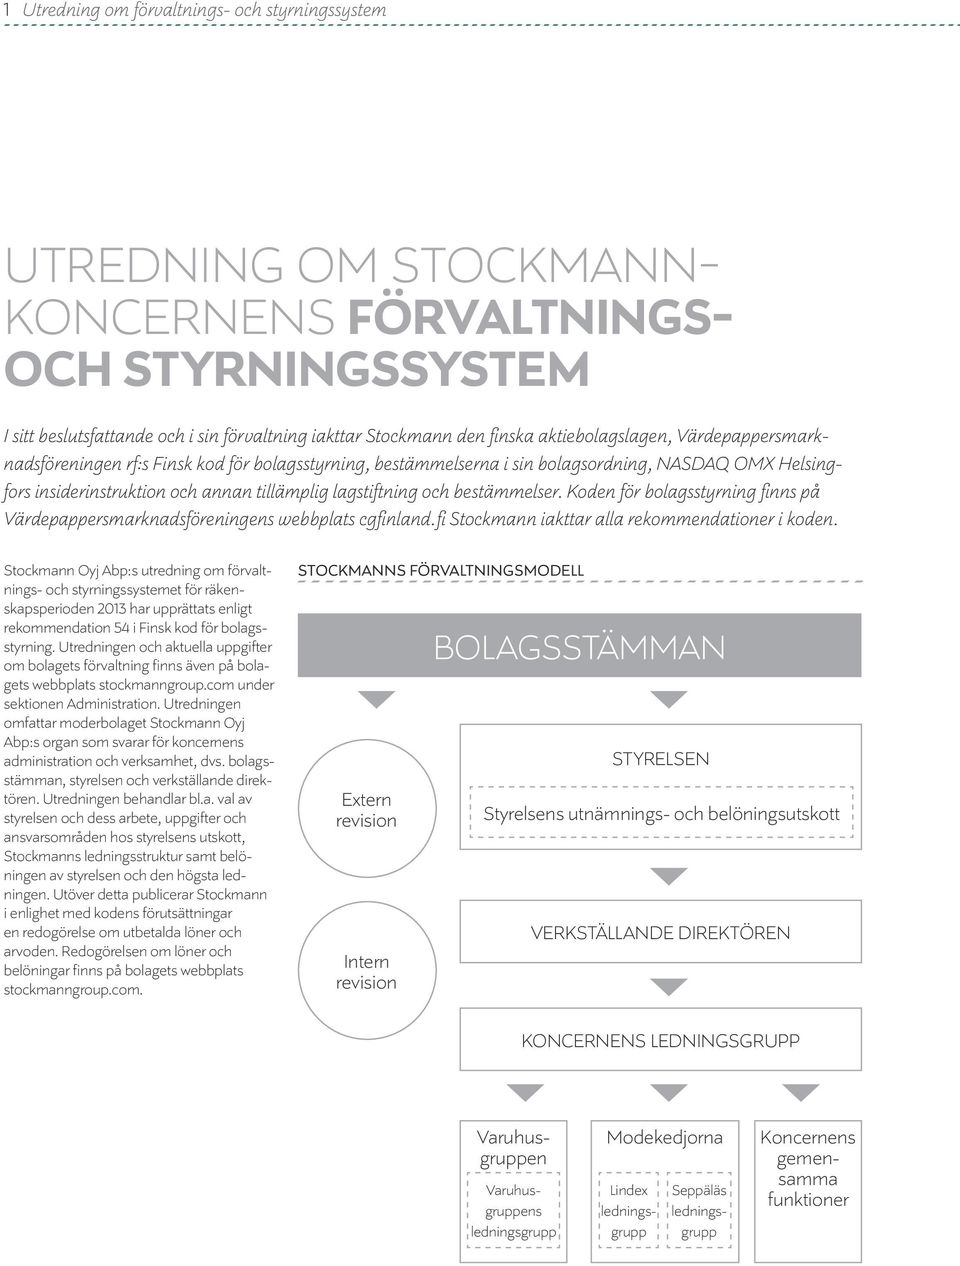 bestämmelser. Koden för bolagsstyrning finns på Värdepappersmarknadsföreningens webbplats cgfinland.fi Stockmann iakttar alla rekommendationer i koden.